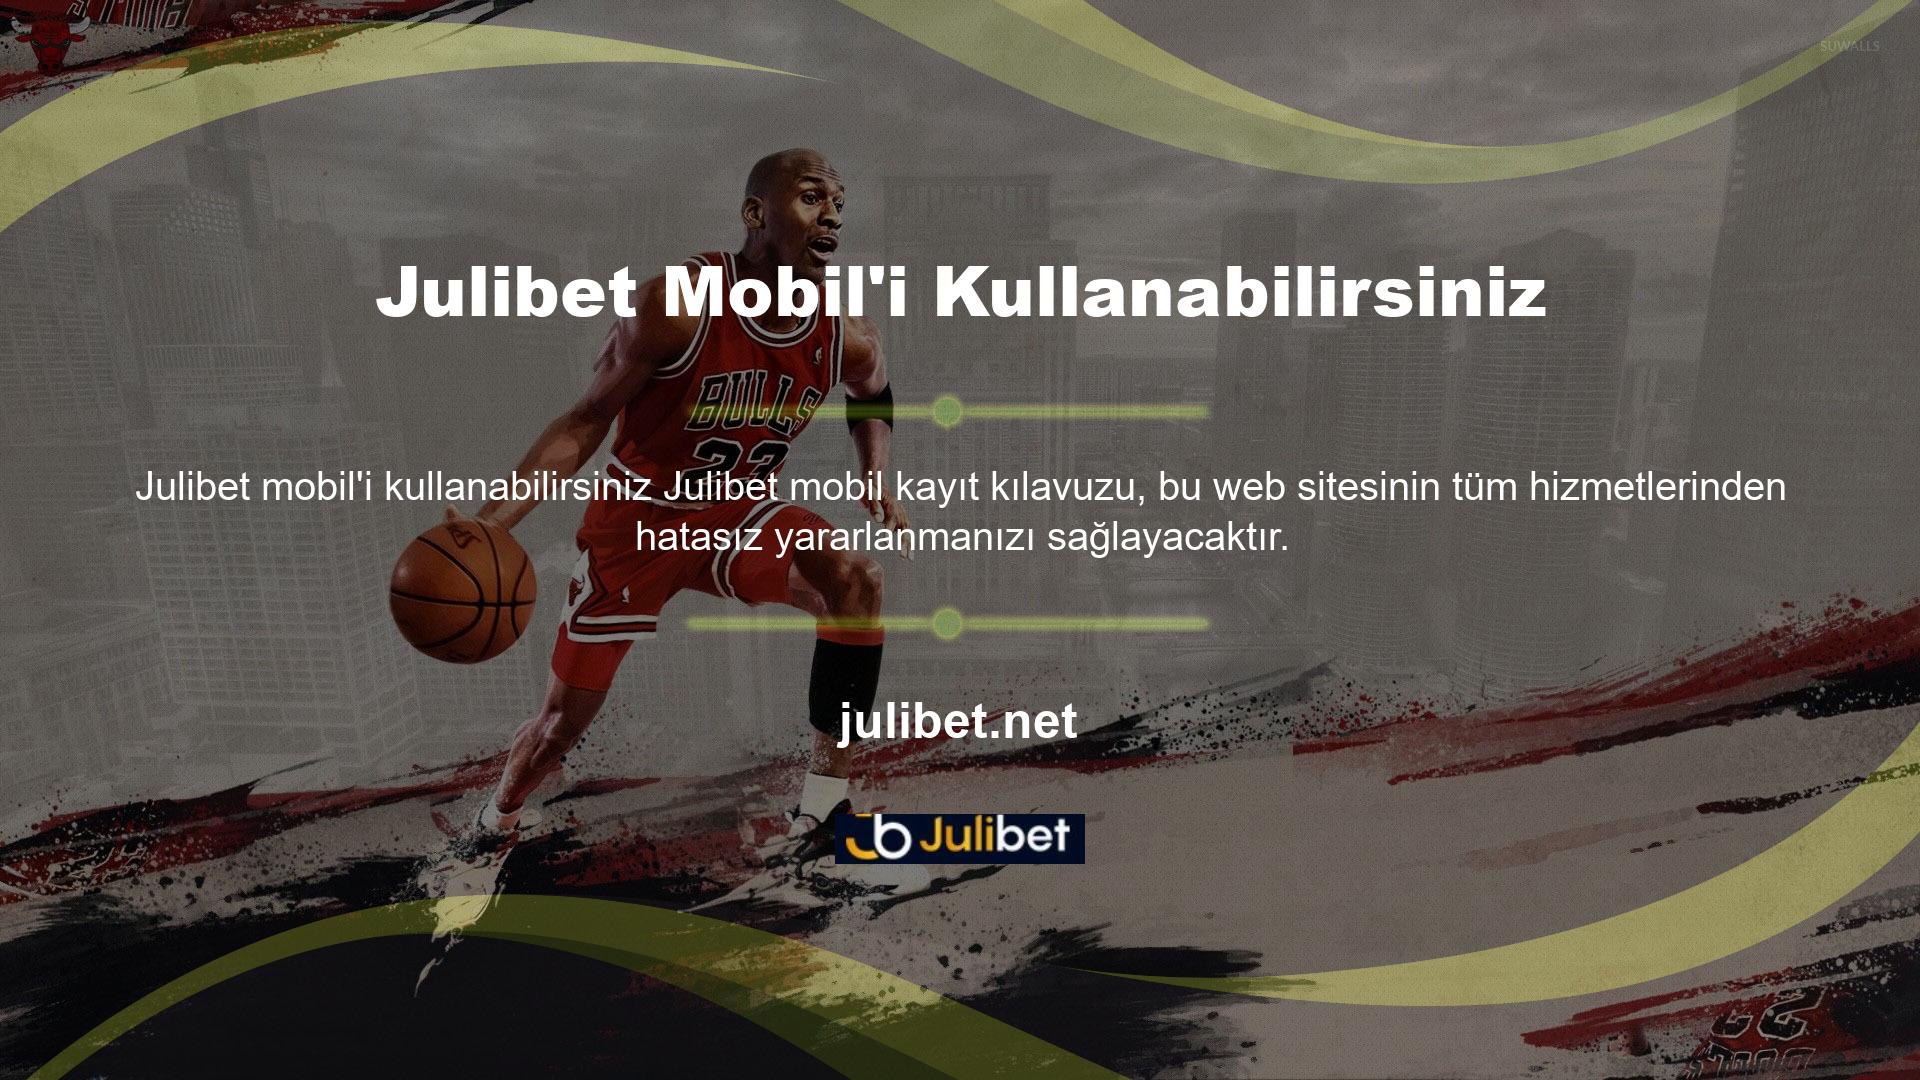 Julibet sitesinin spor bahisleri bölümünü cep telefonunuzdan kullanabilirsiniz